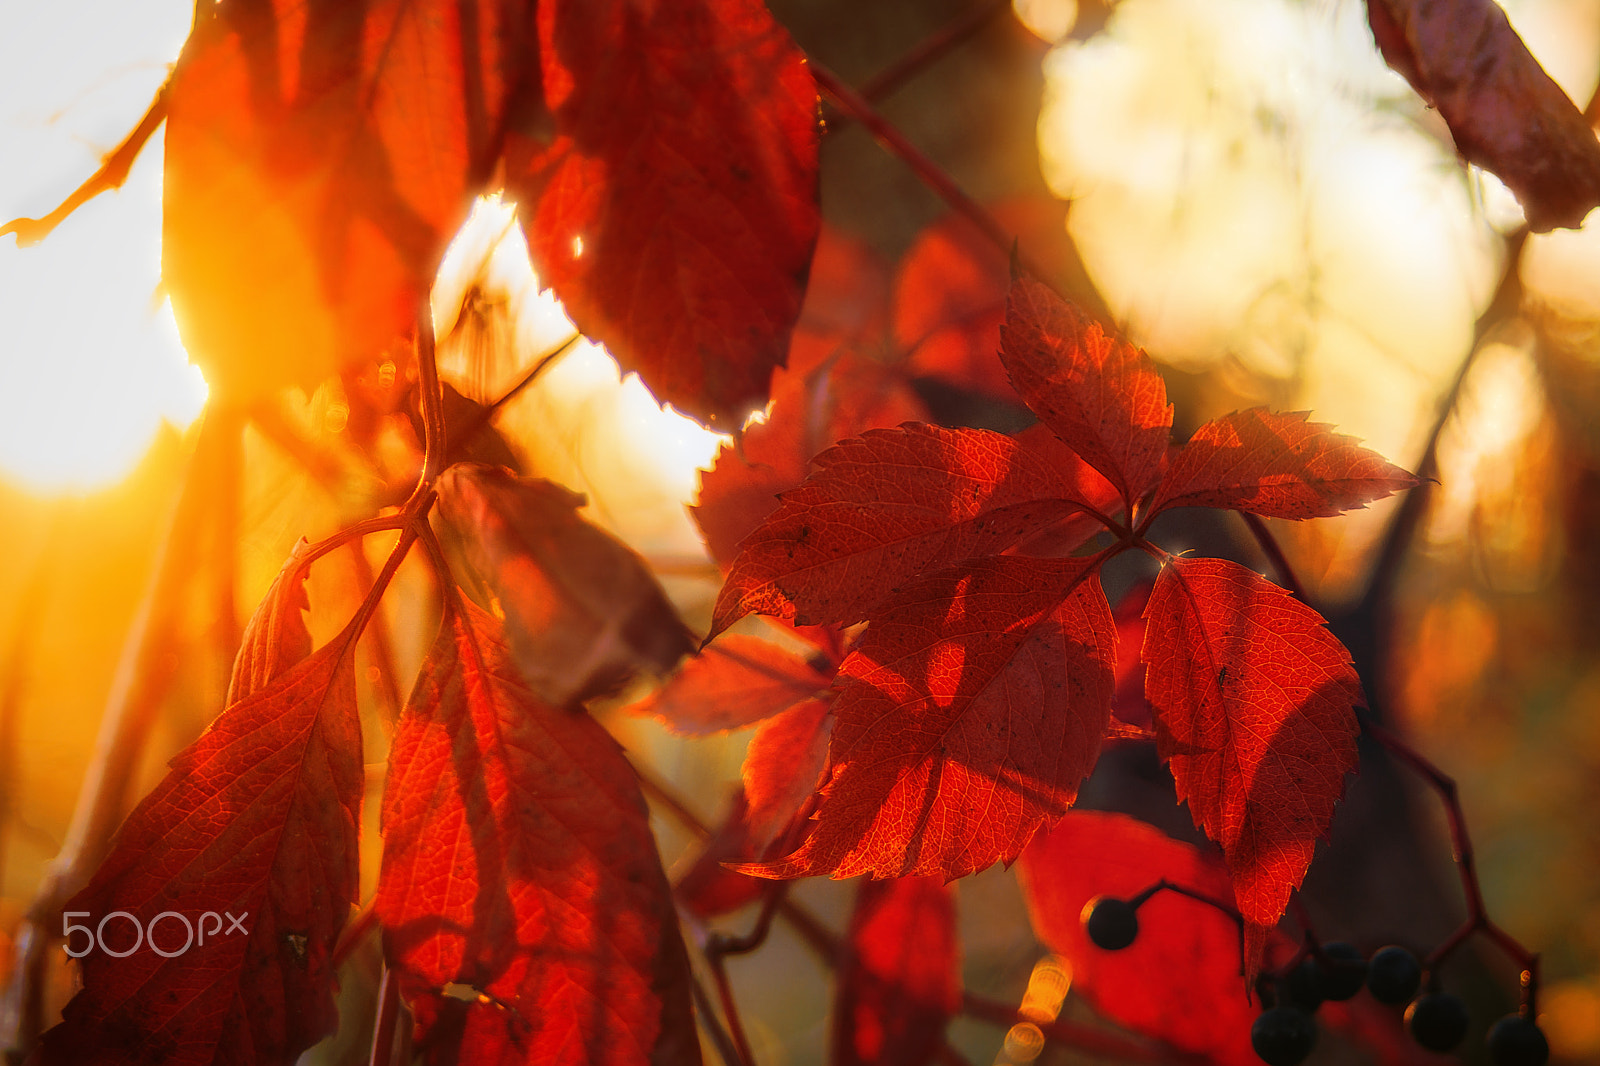 Sony SLT-A77 sample photo. Autumn photography